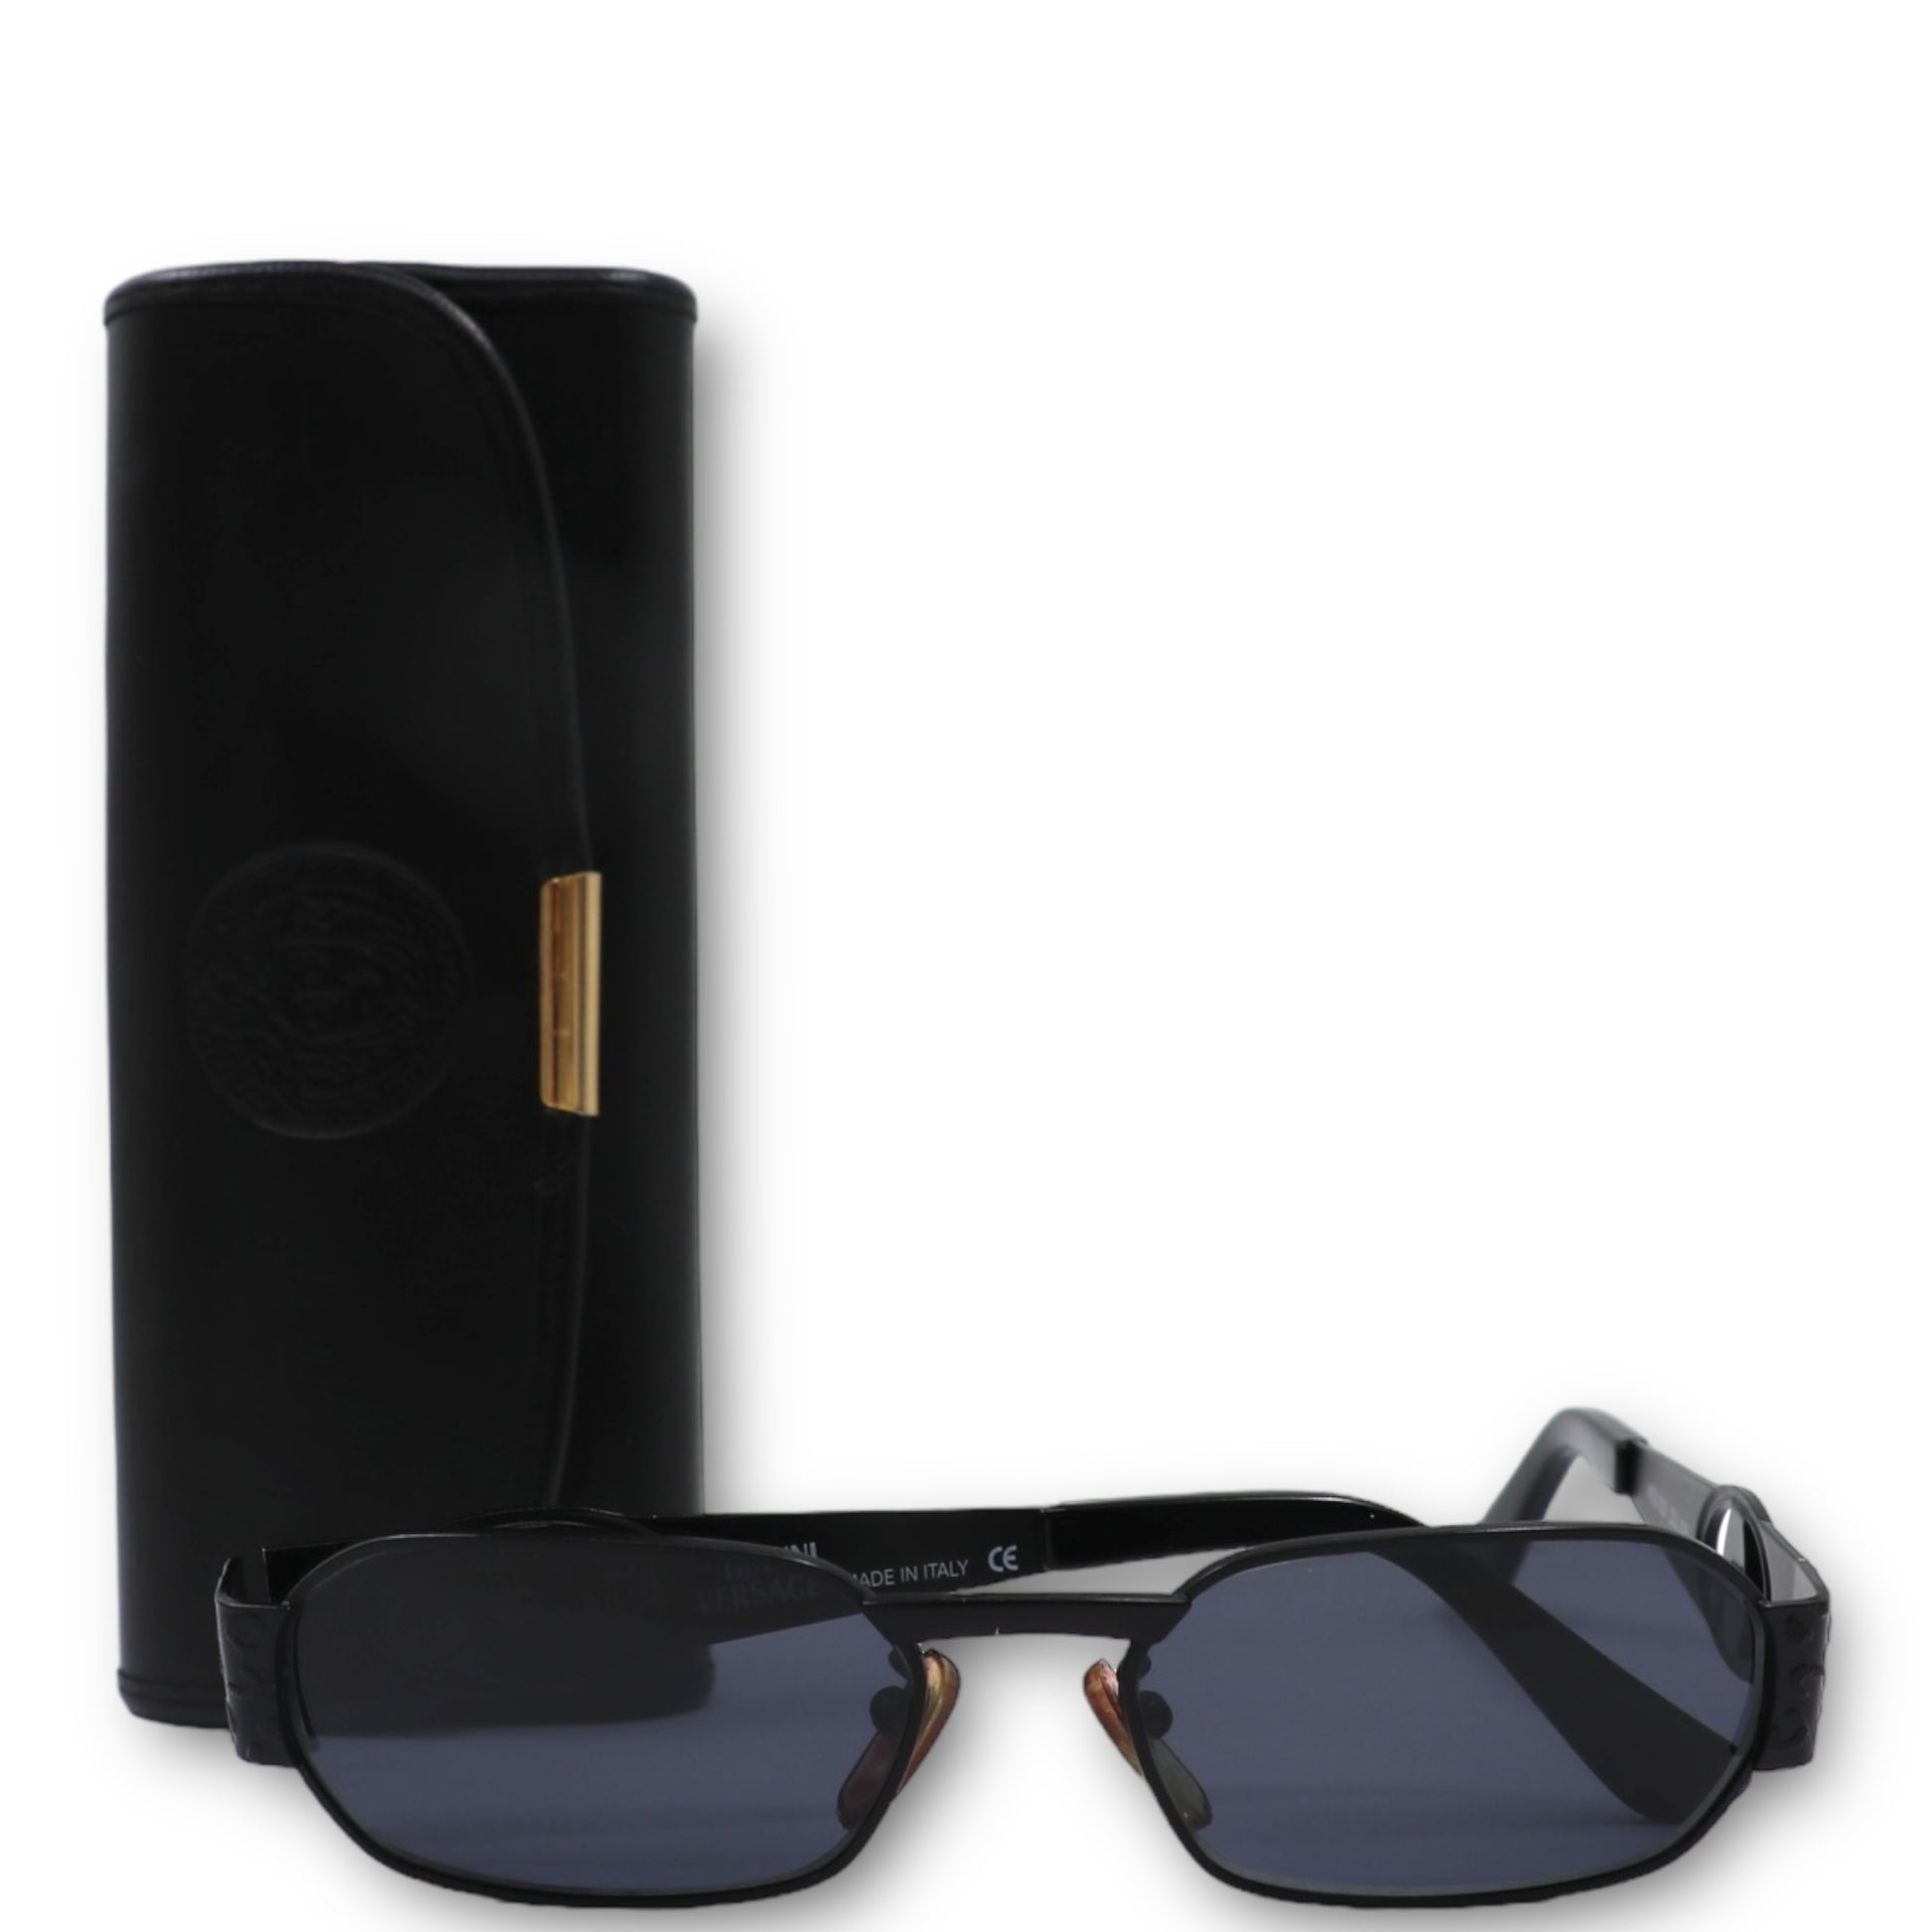 Versace Sonnenbrillen günstig kaufen, Second Hand